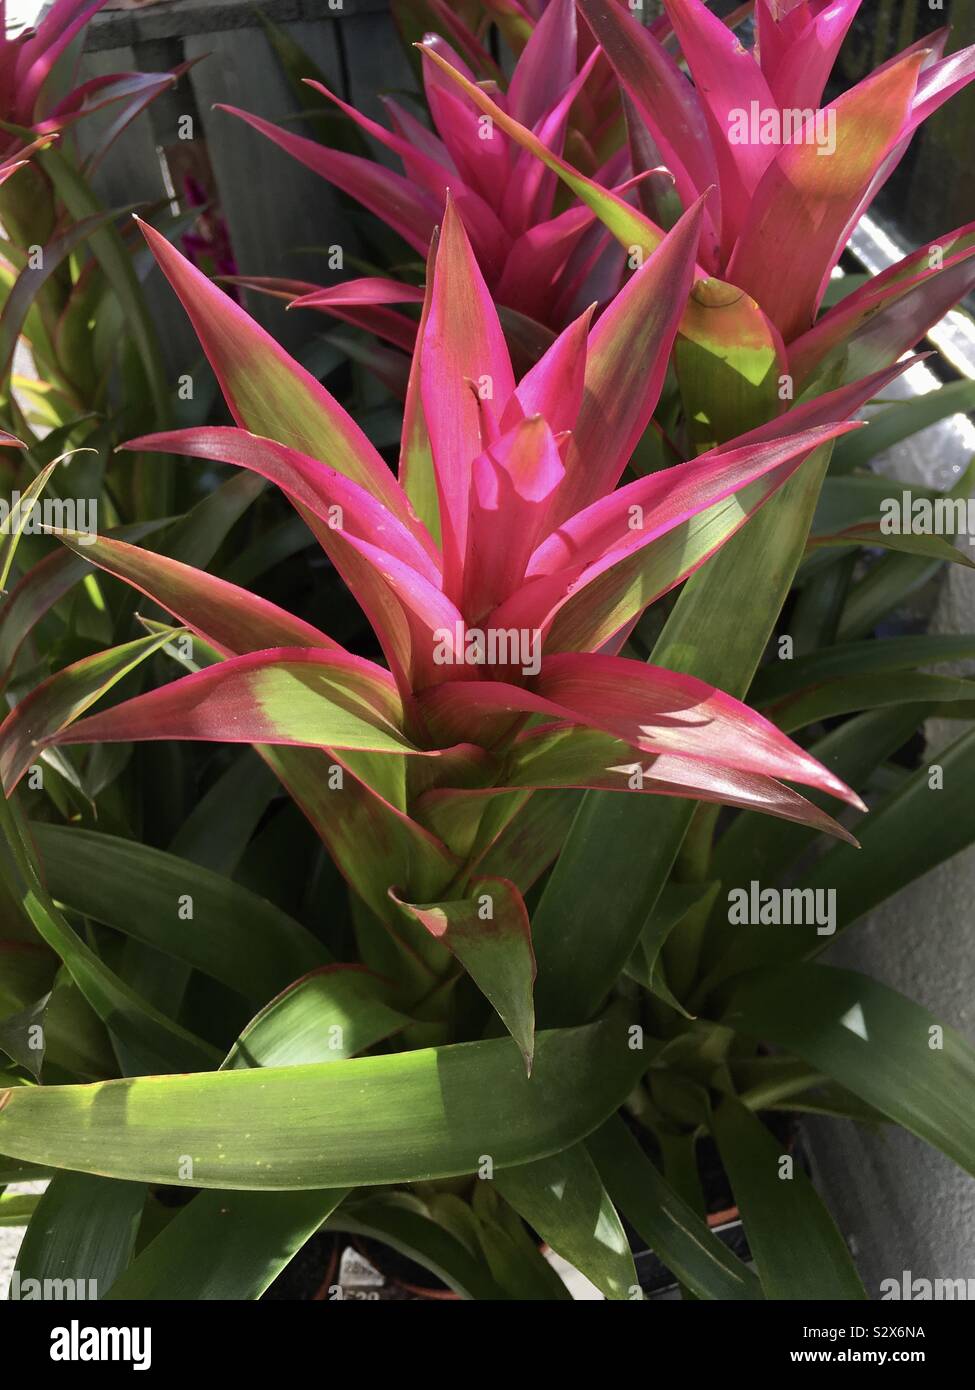 Beautiful star shaped plants Stock Photo